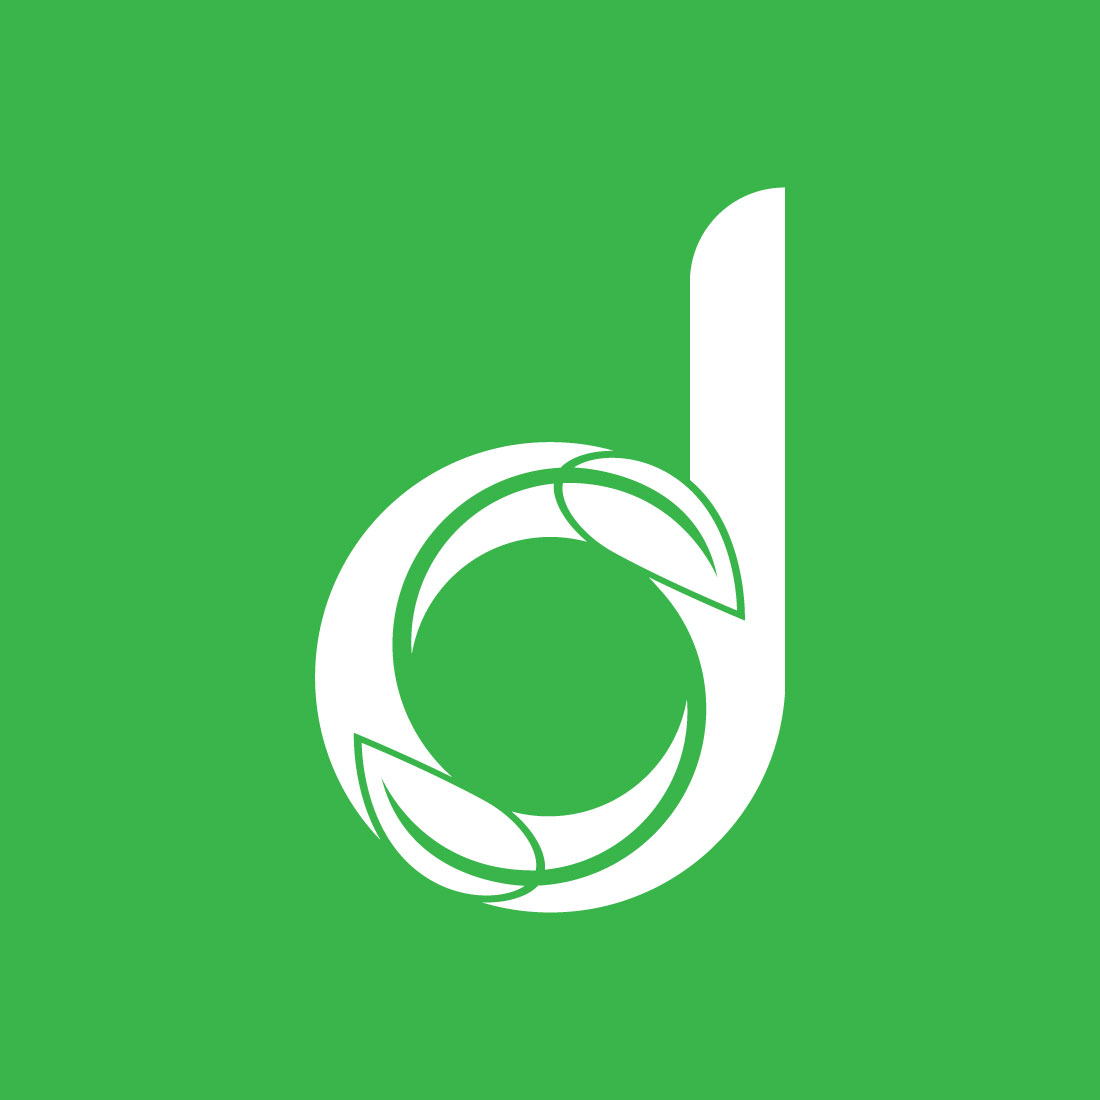 Letter D Leafy Green Logo Design cover image.